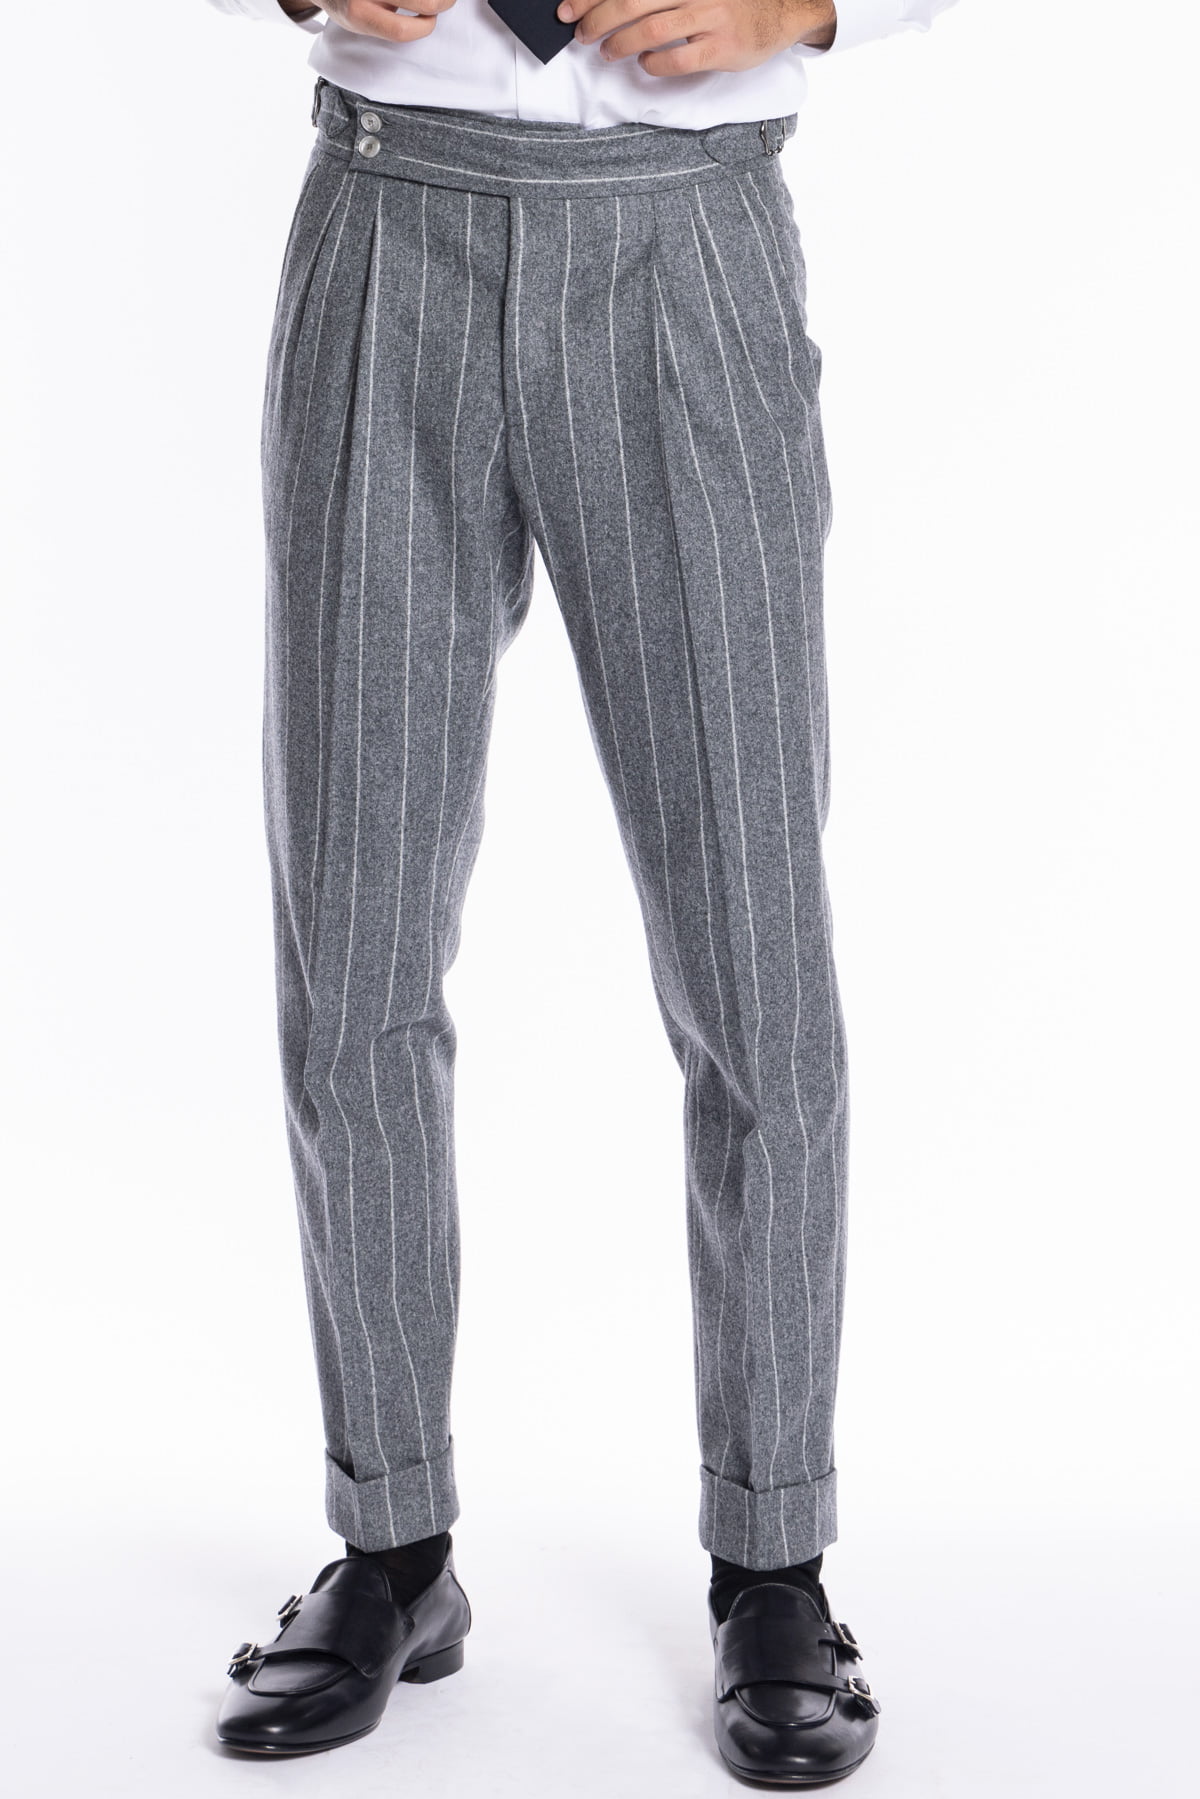 Pantalone uomo grigio chiaro gessato vita alta tasca america in lana flanella Vitale Barberis Canonico con doppia pinces e fibbie laterali regolabili